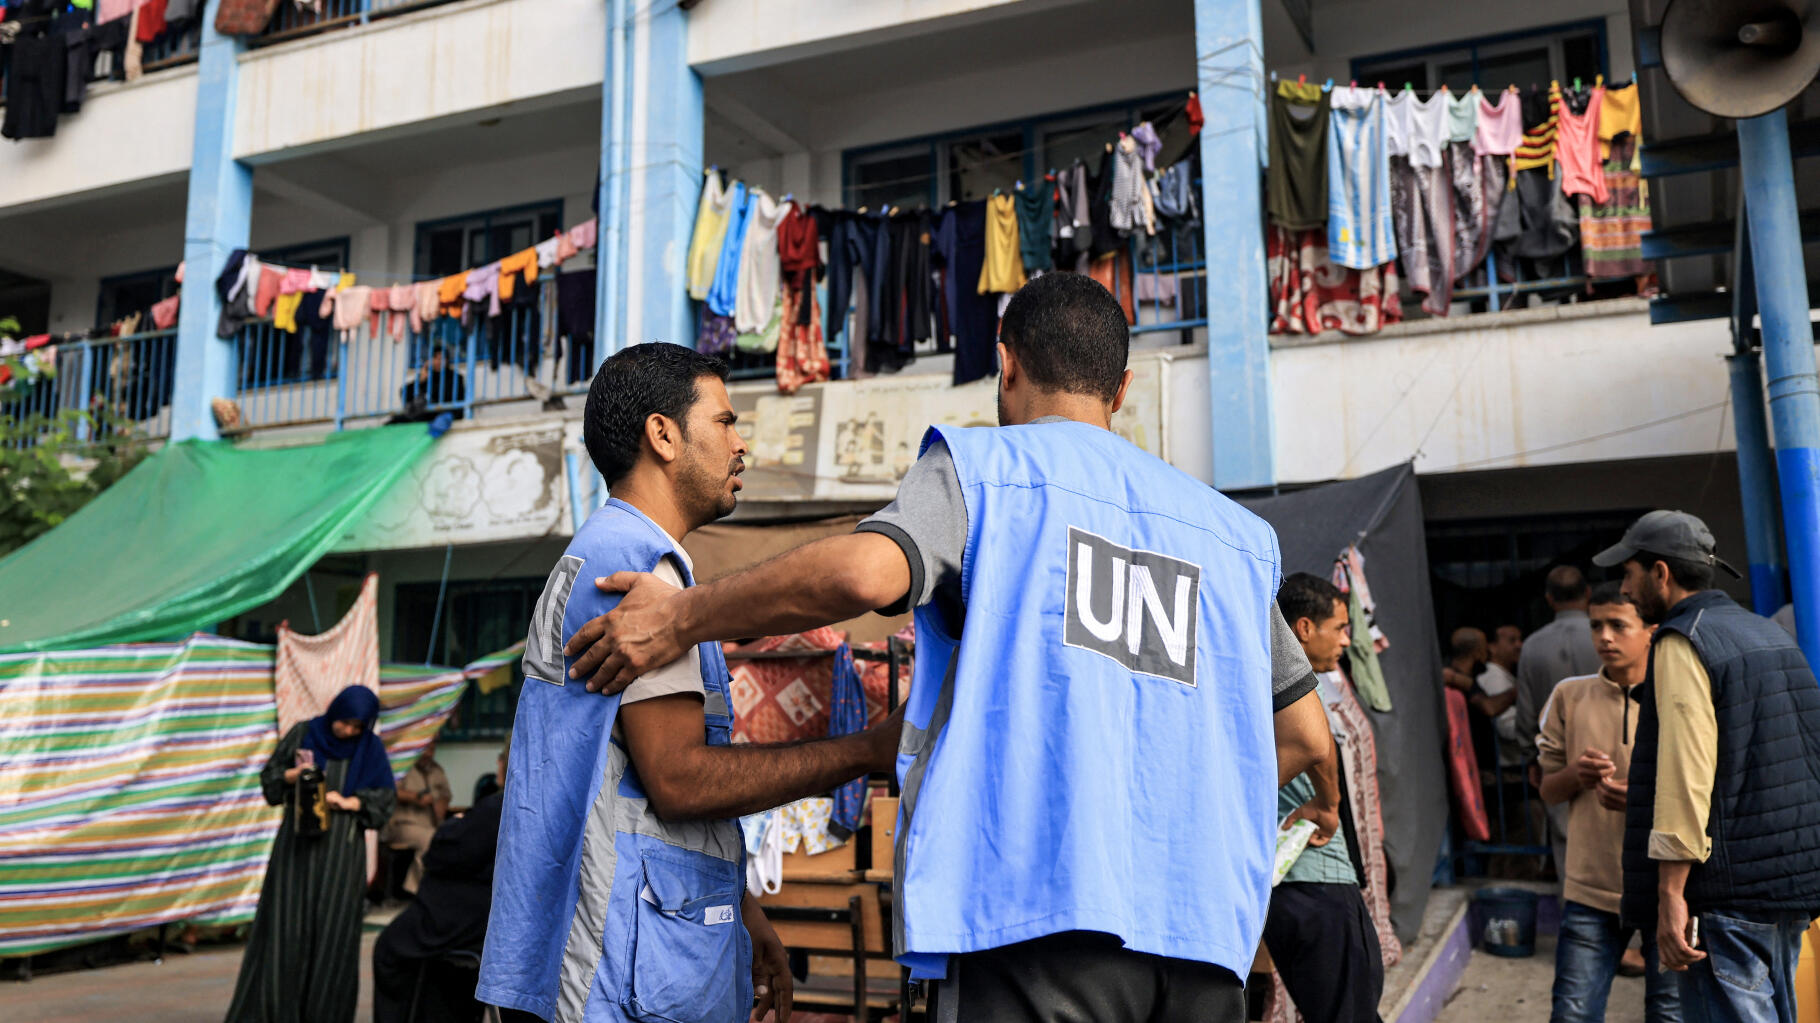 Di fronte alle polemiche sull'UNRWA, anche la Francia ha sospeso i suoi aiuti